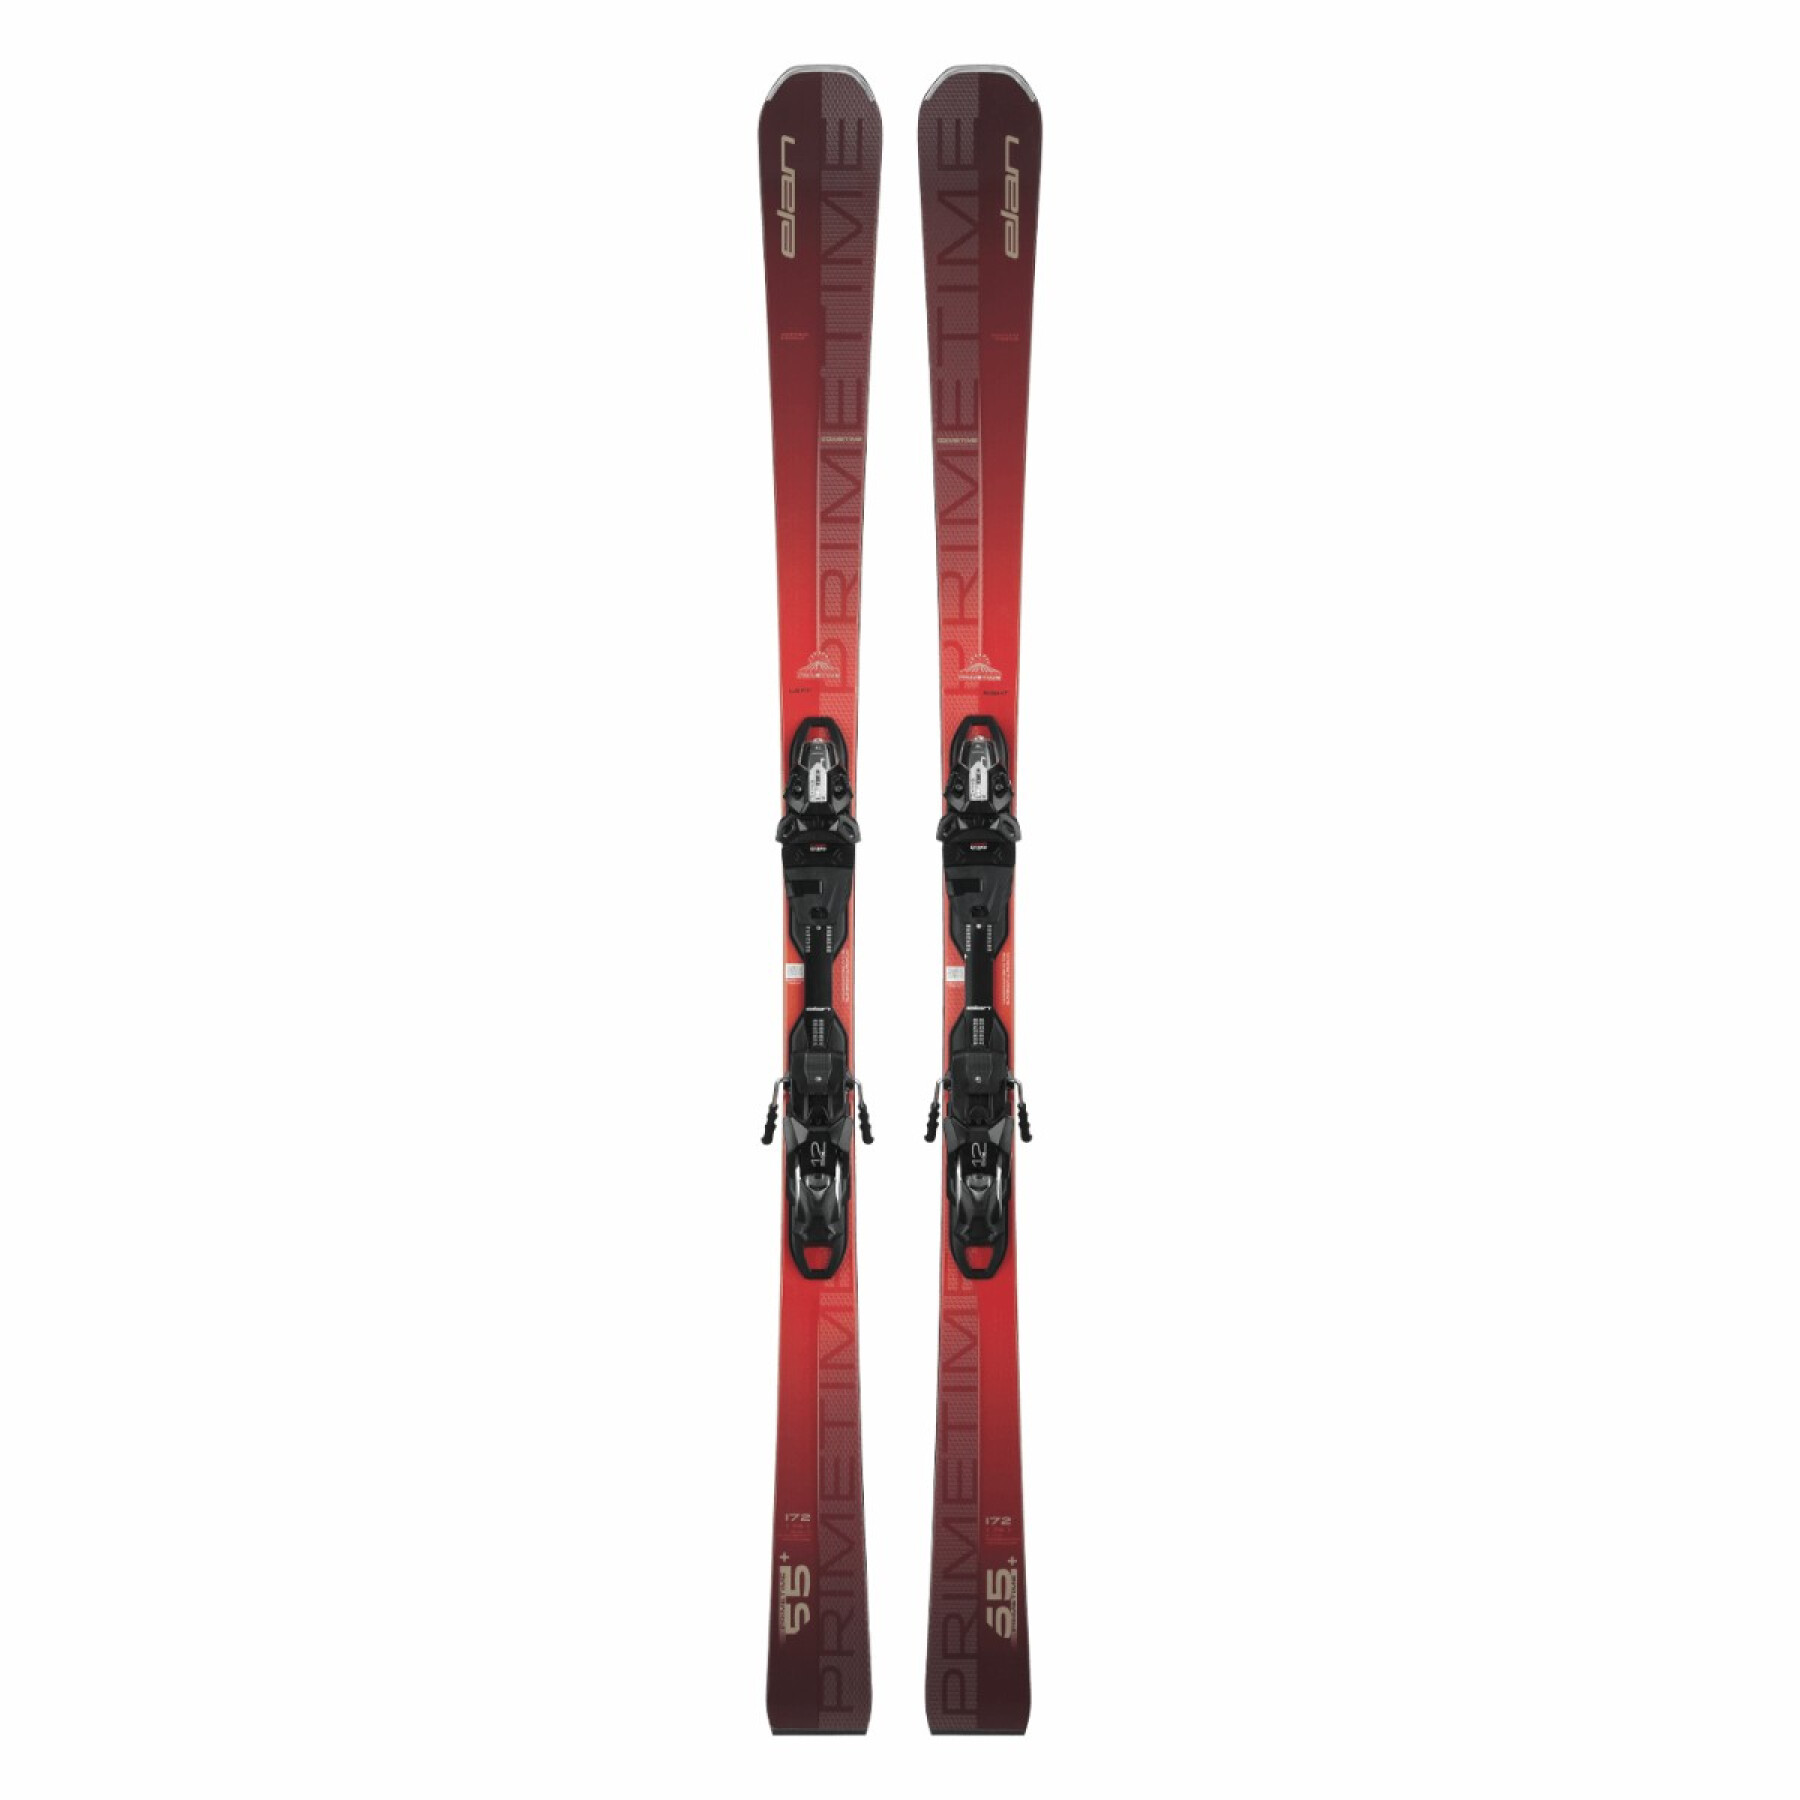 Pack de esqui Primetime 55+ fx emx12.0 com fixações Elan